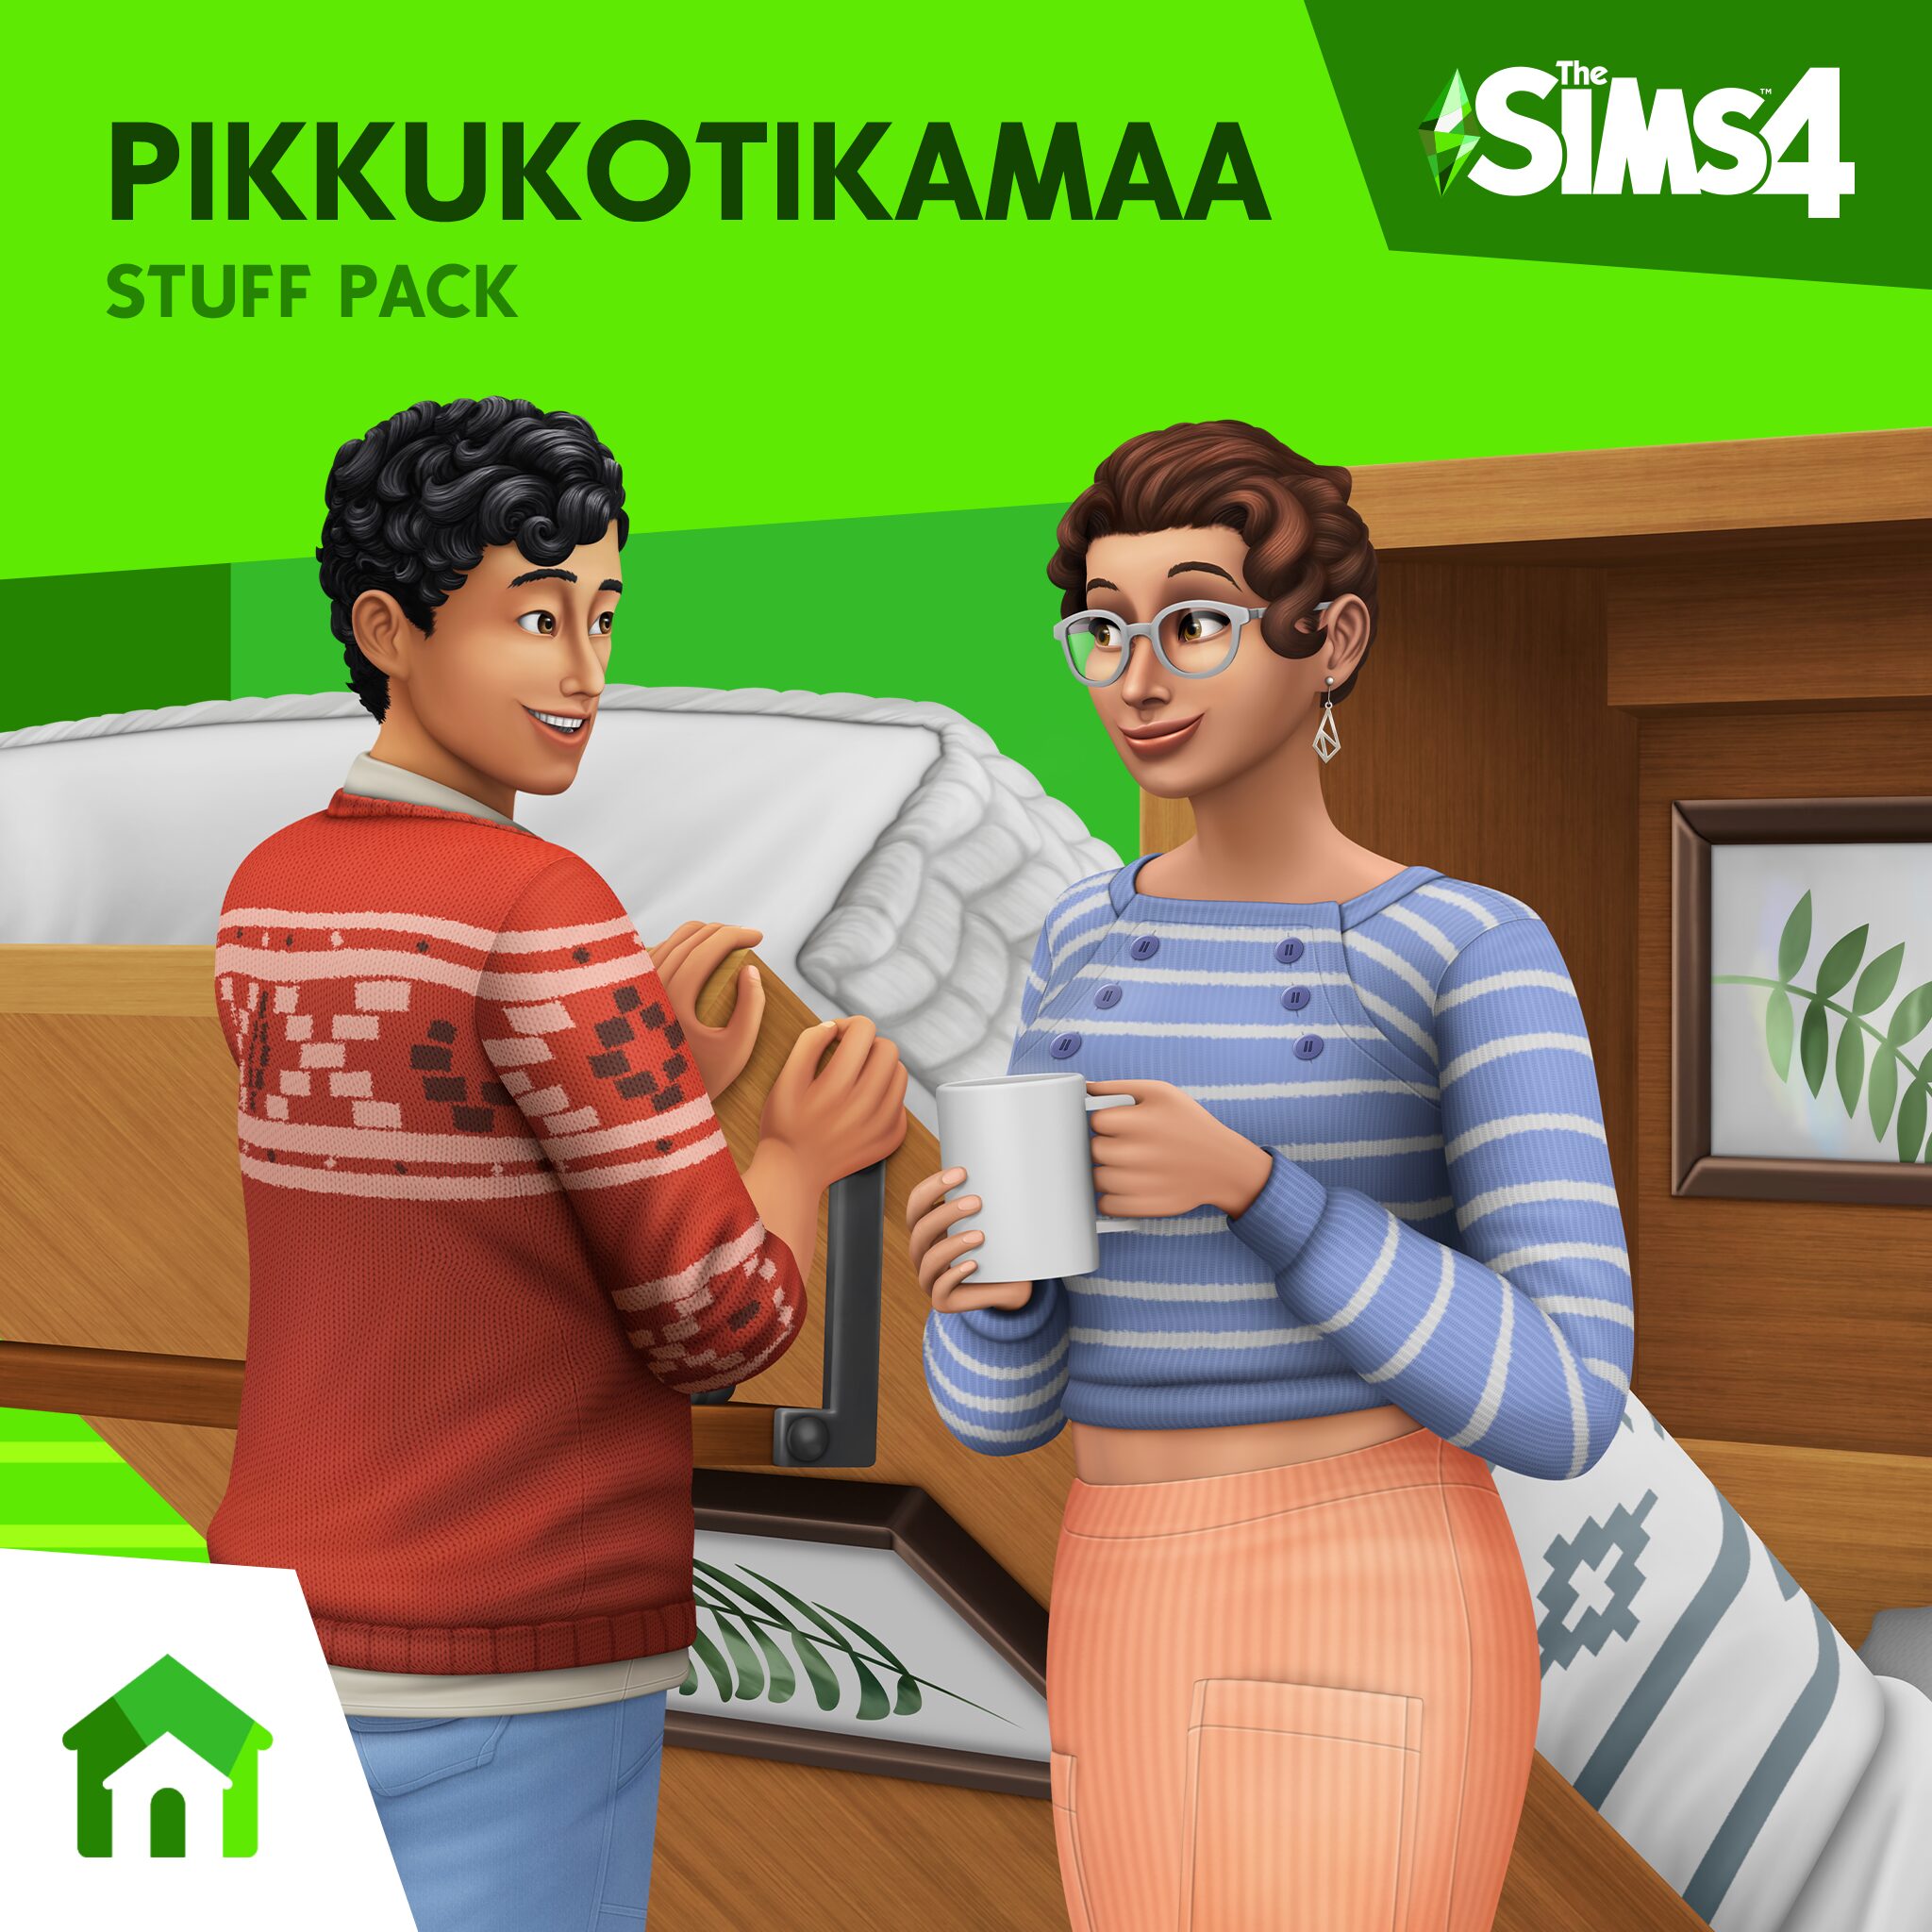 The Sims™ 4 Pikkukotikamaa Stuff Pack